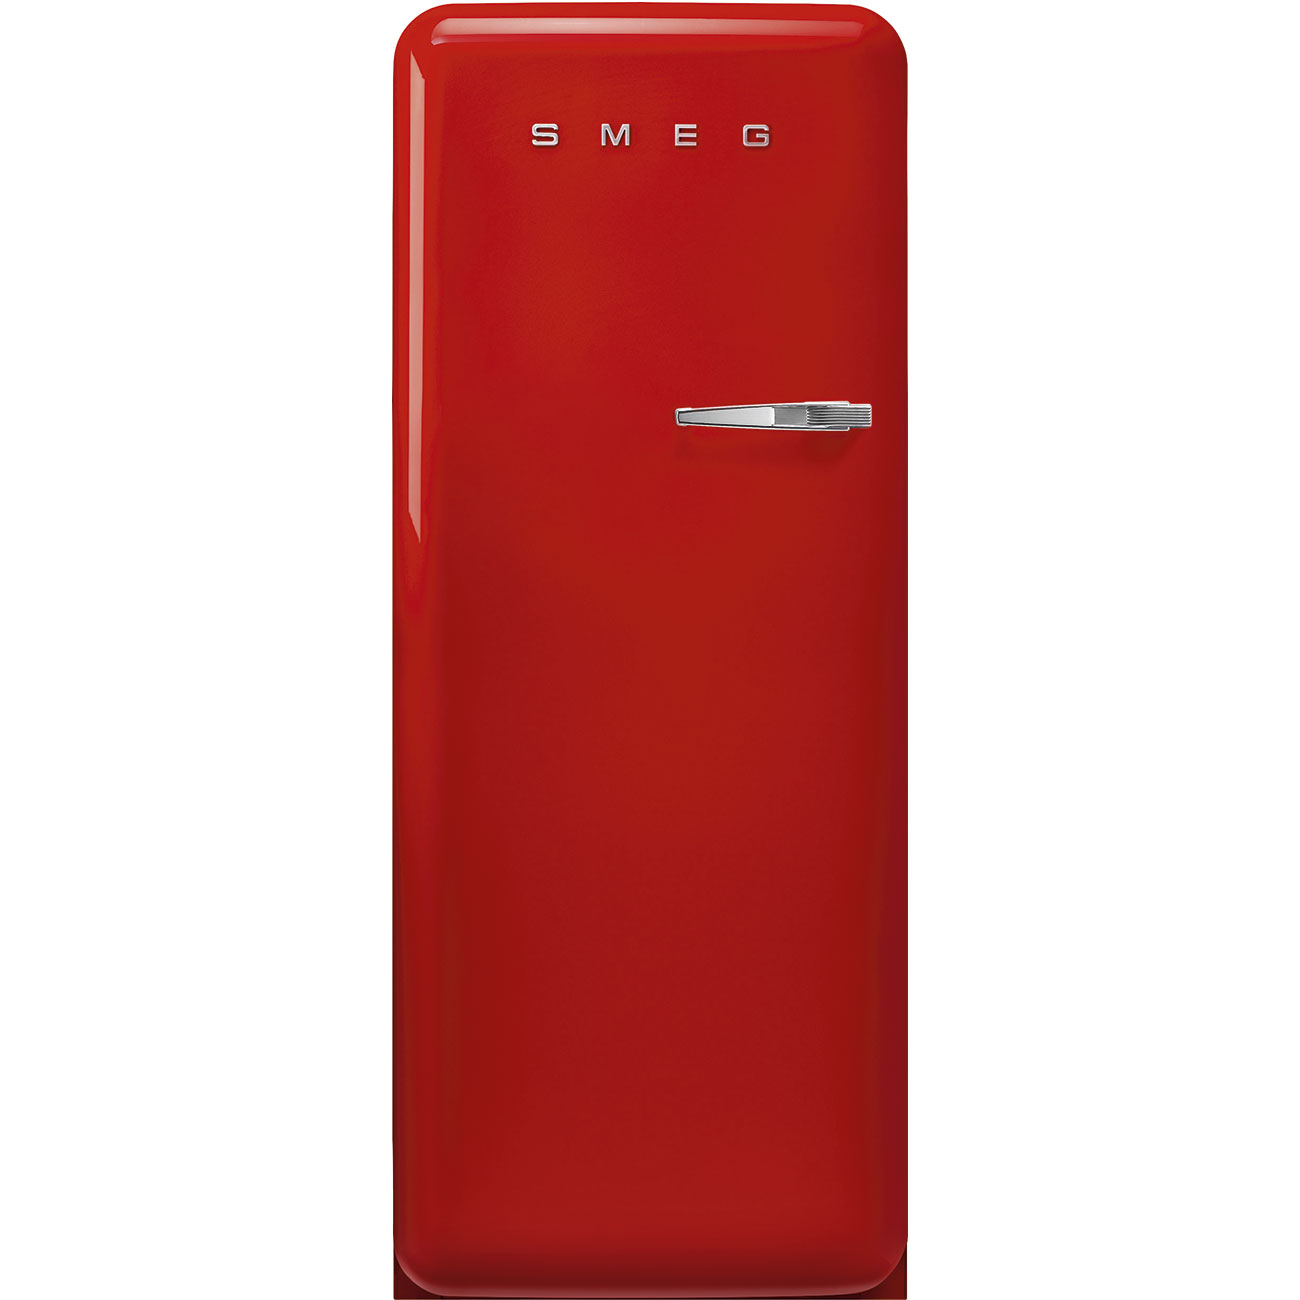 Rot Retro-Kühlschränke von Smeg_1